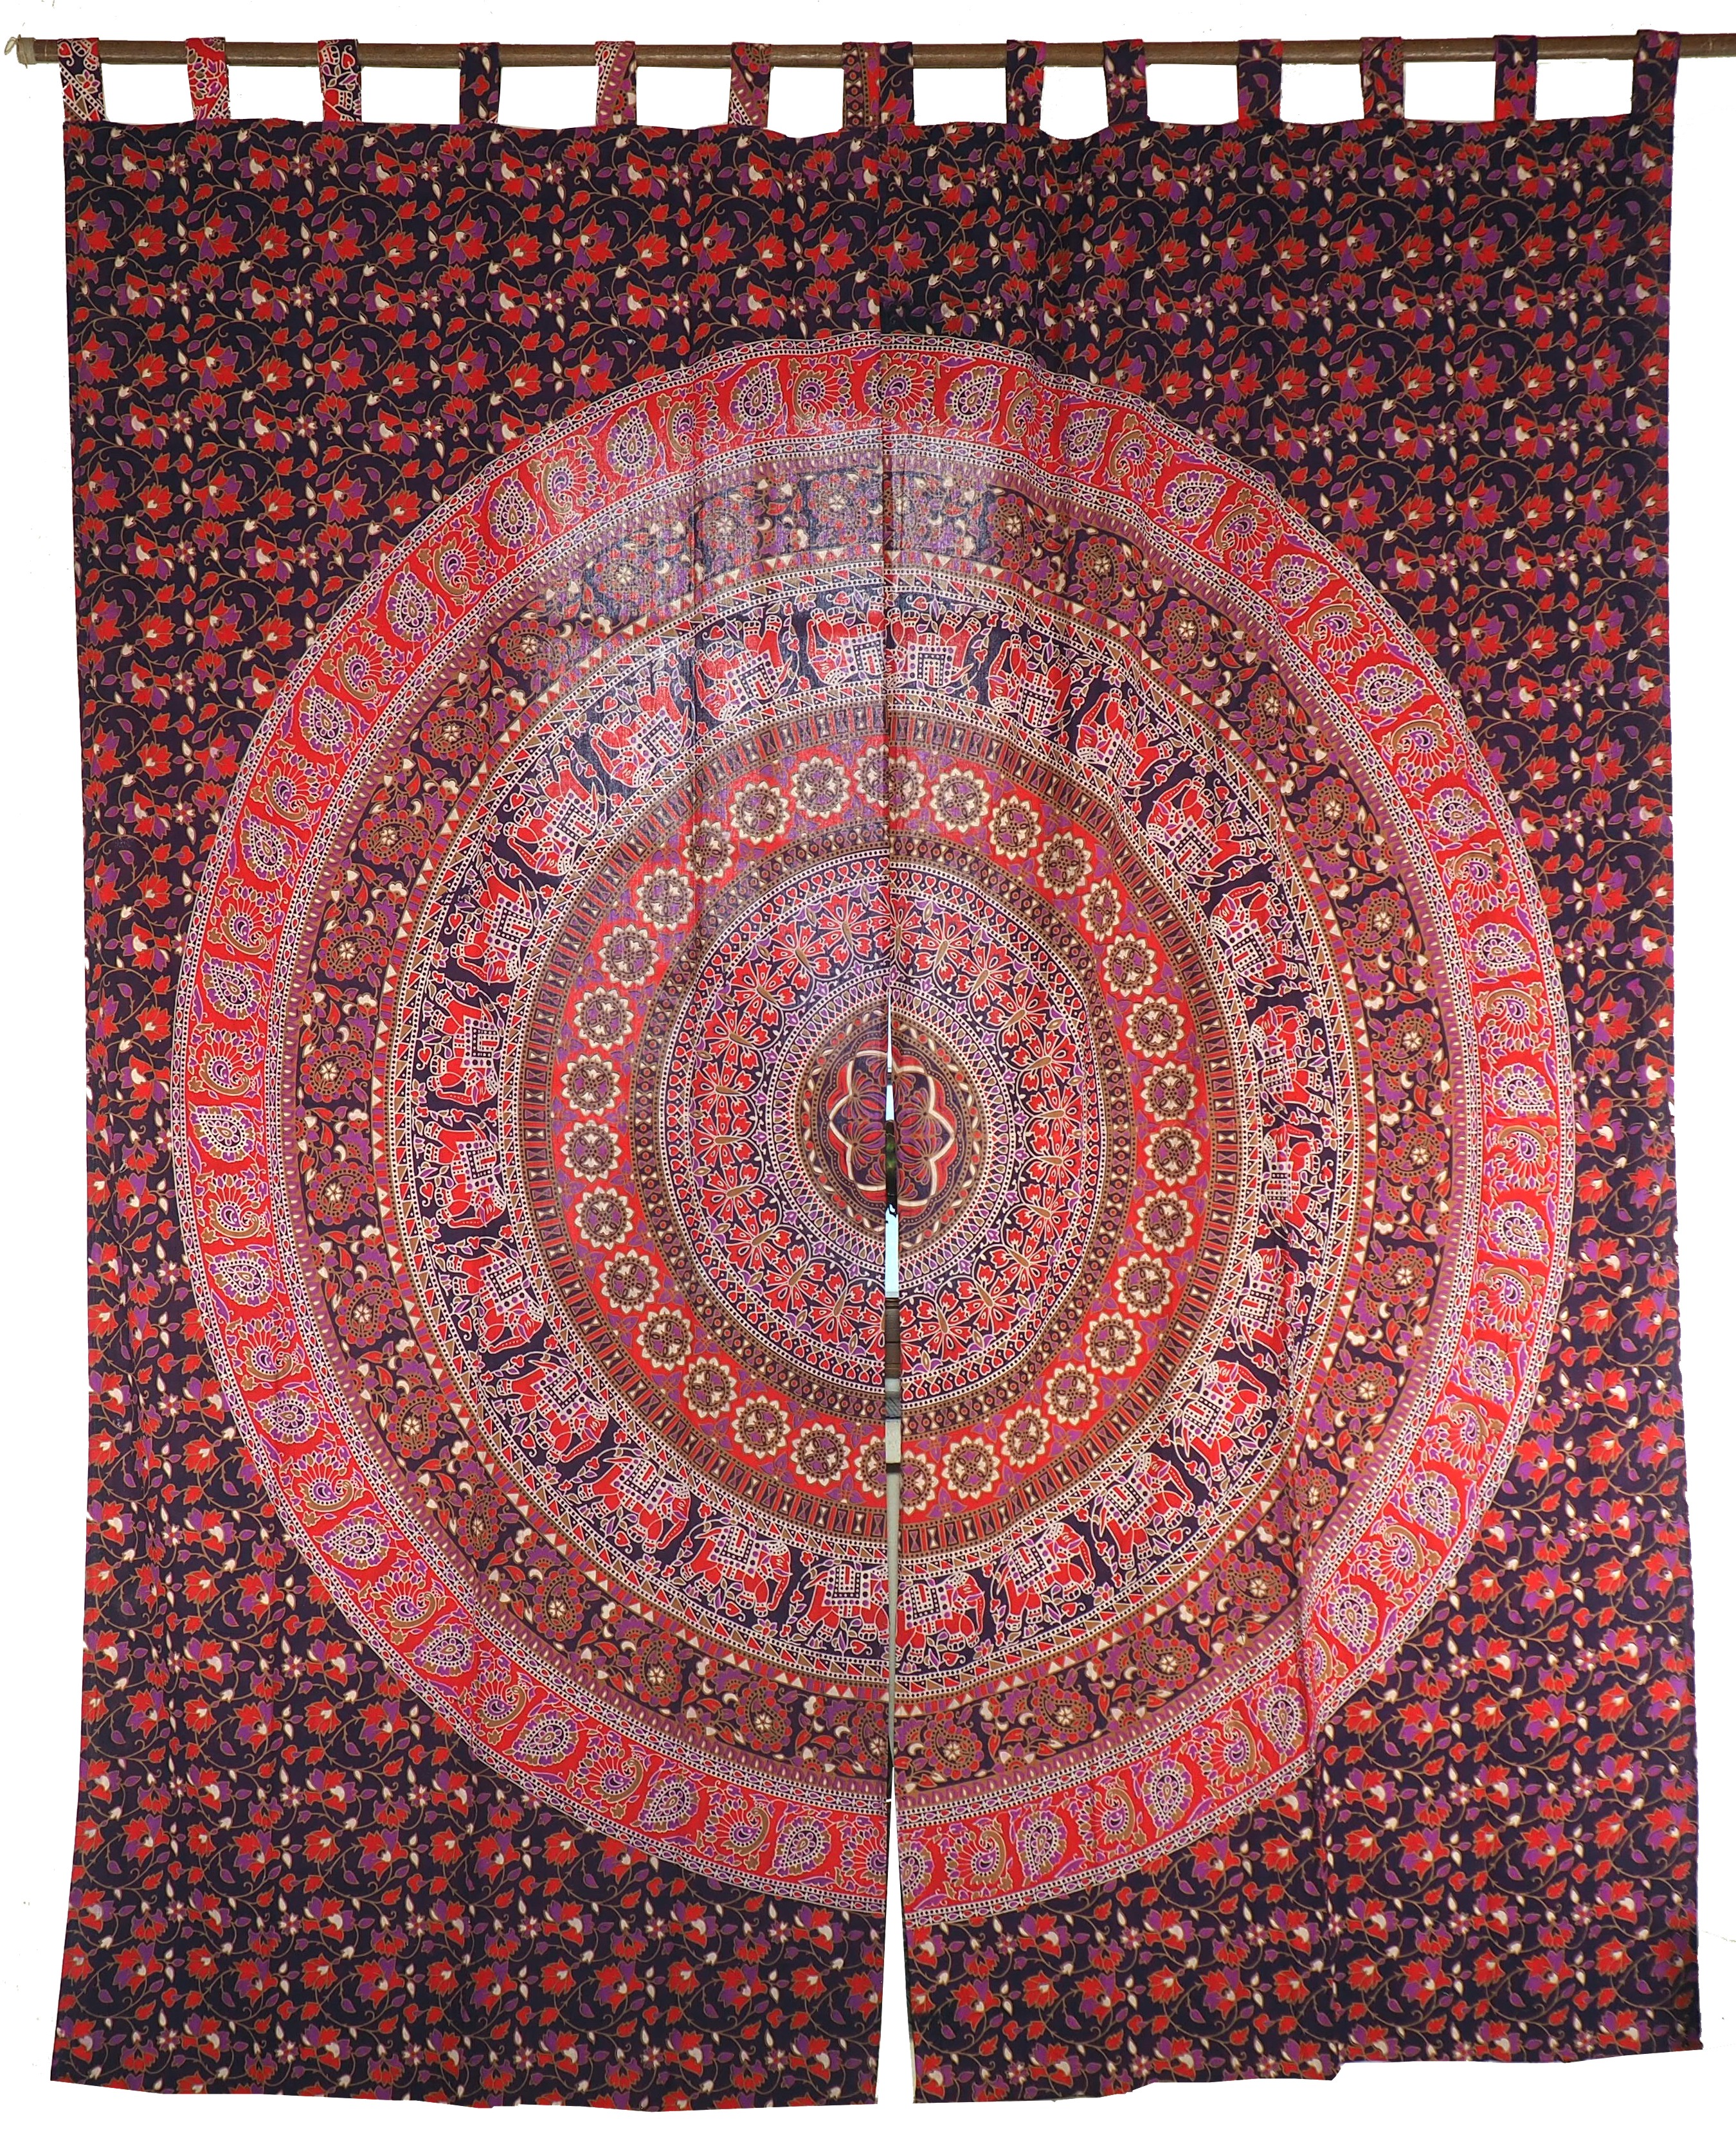 Vorhang-Gardine 1 Paar Vorhänge Gardinen Motiv Schlaufen mit Mandala lila-rot